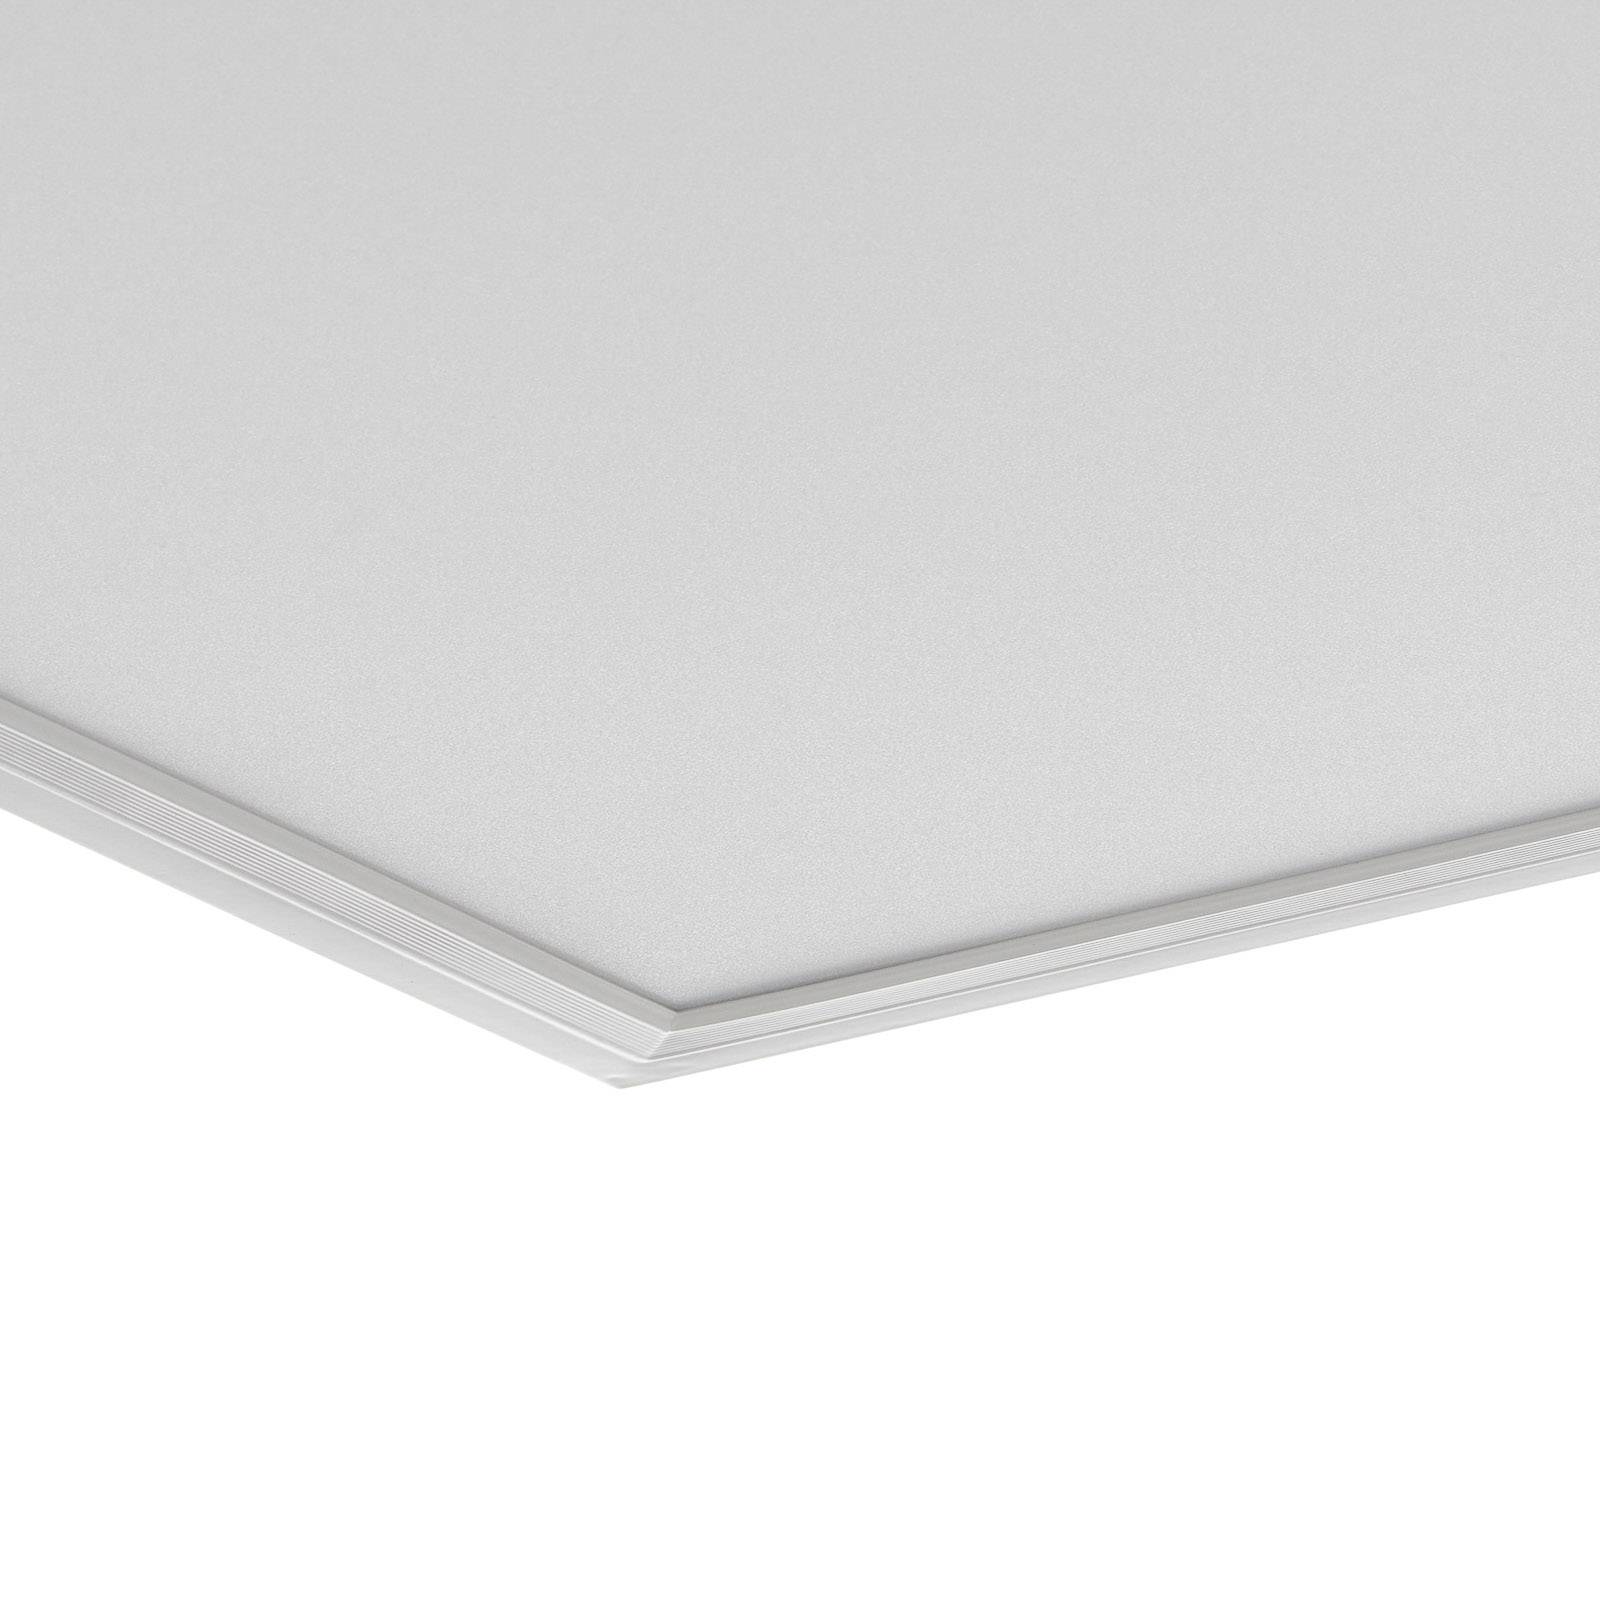 E-shop LED stropné svietidlo Piatto, senzor, 59,5 x 59,5 cm